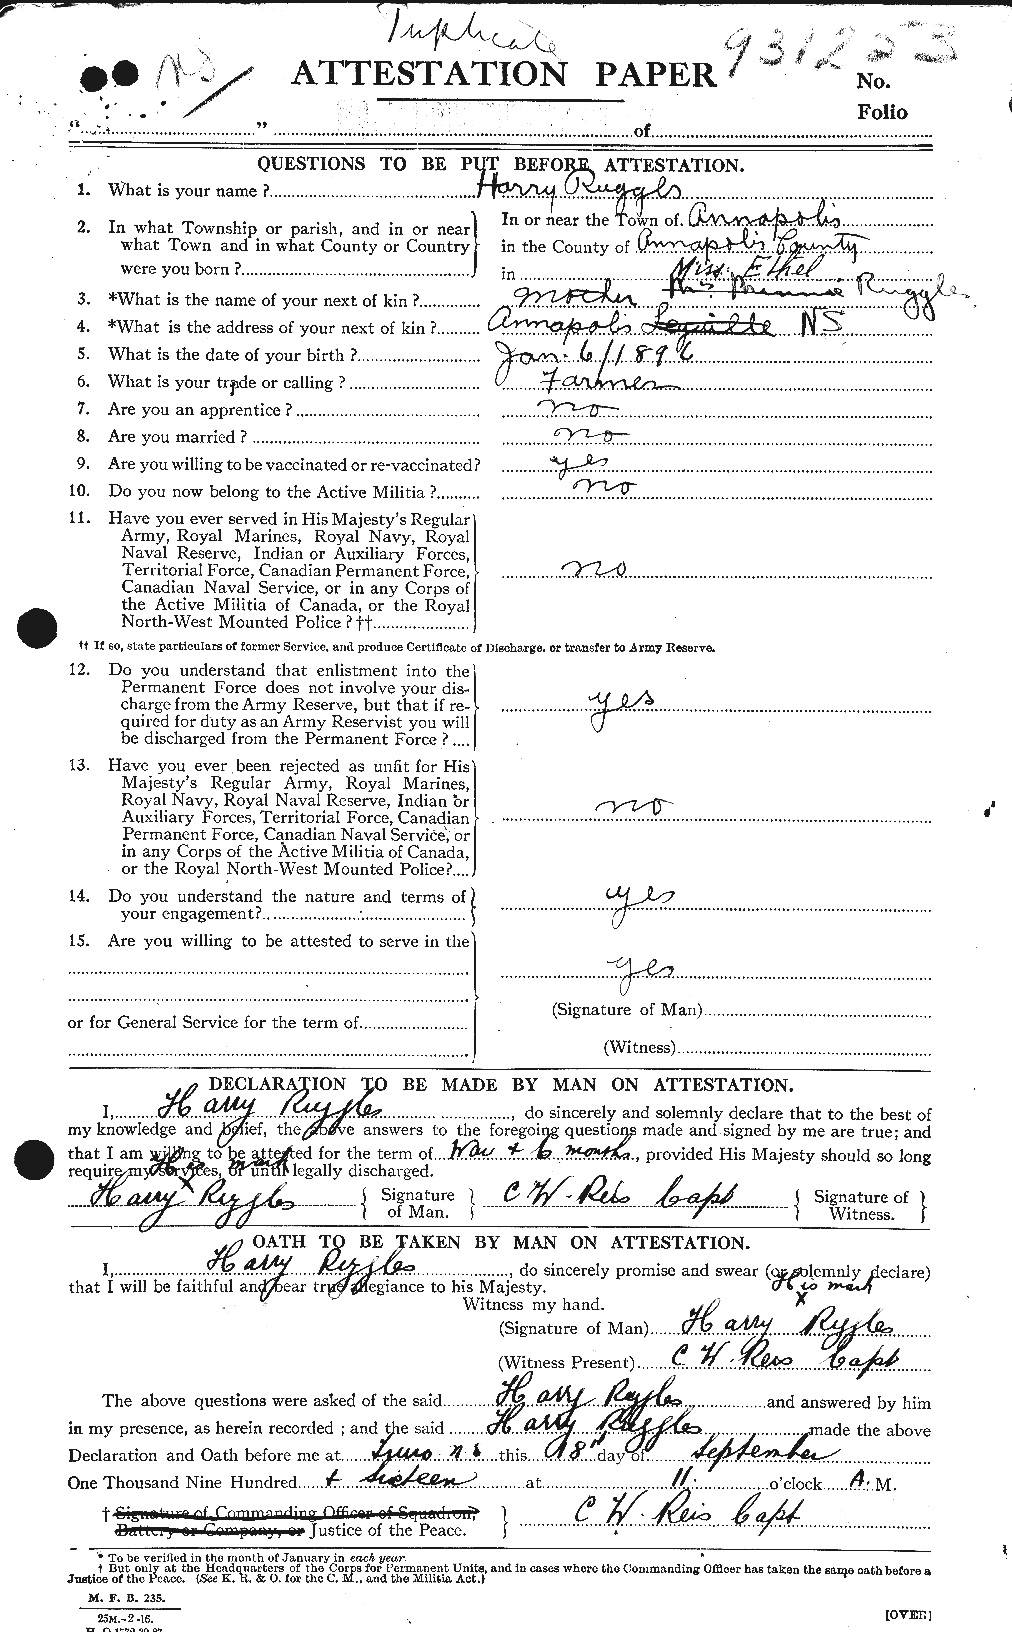 Dossiers du Personnel de la Première Guerre mondiale - CEC 617284a